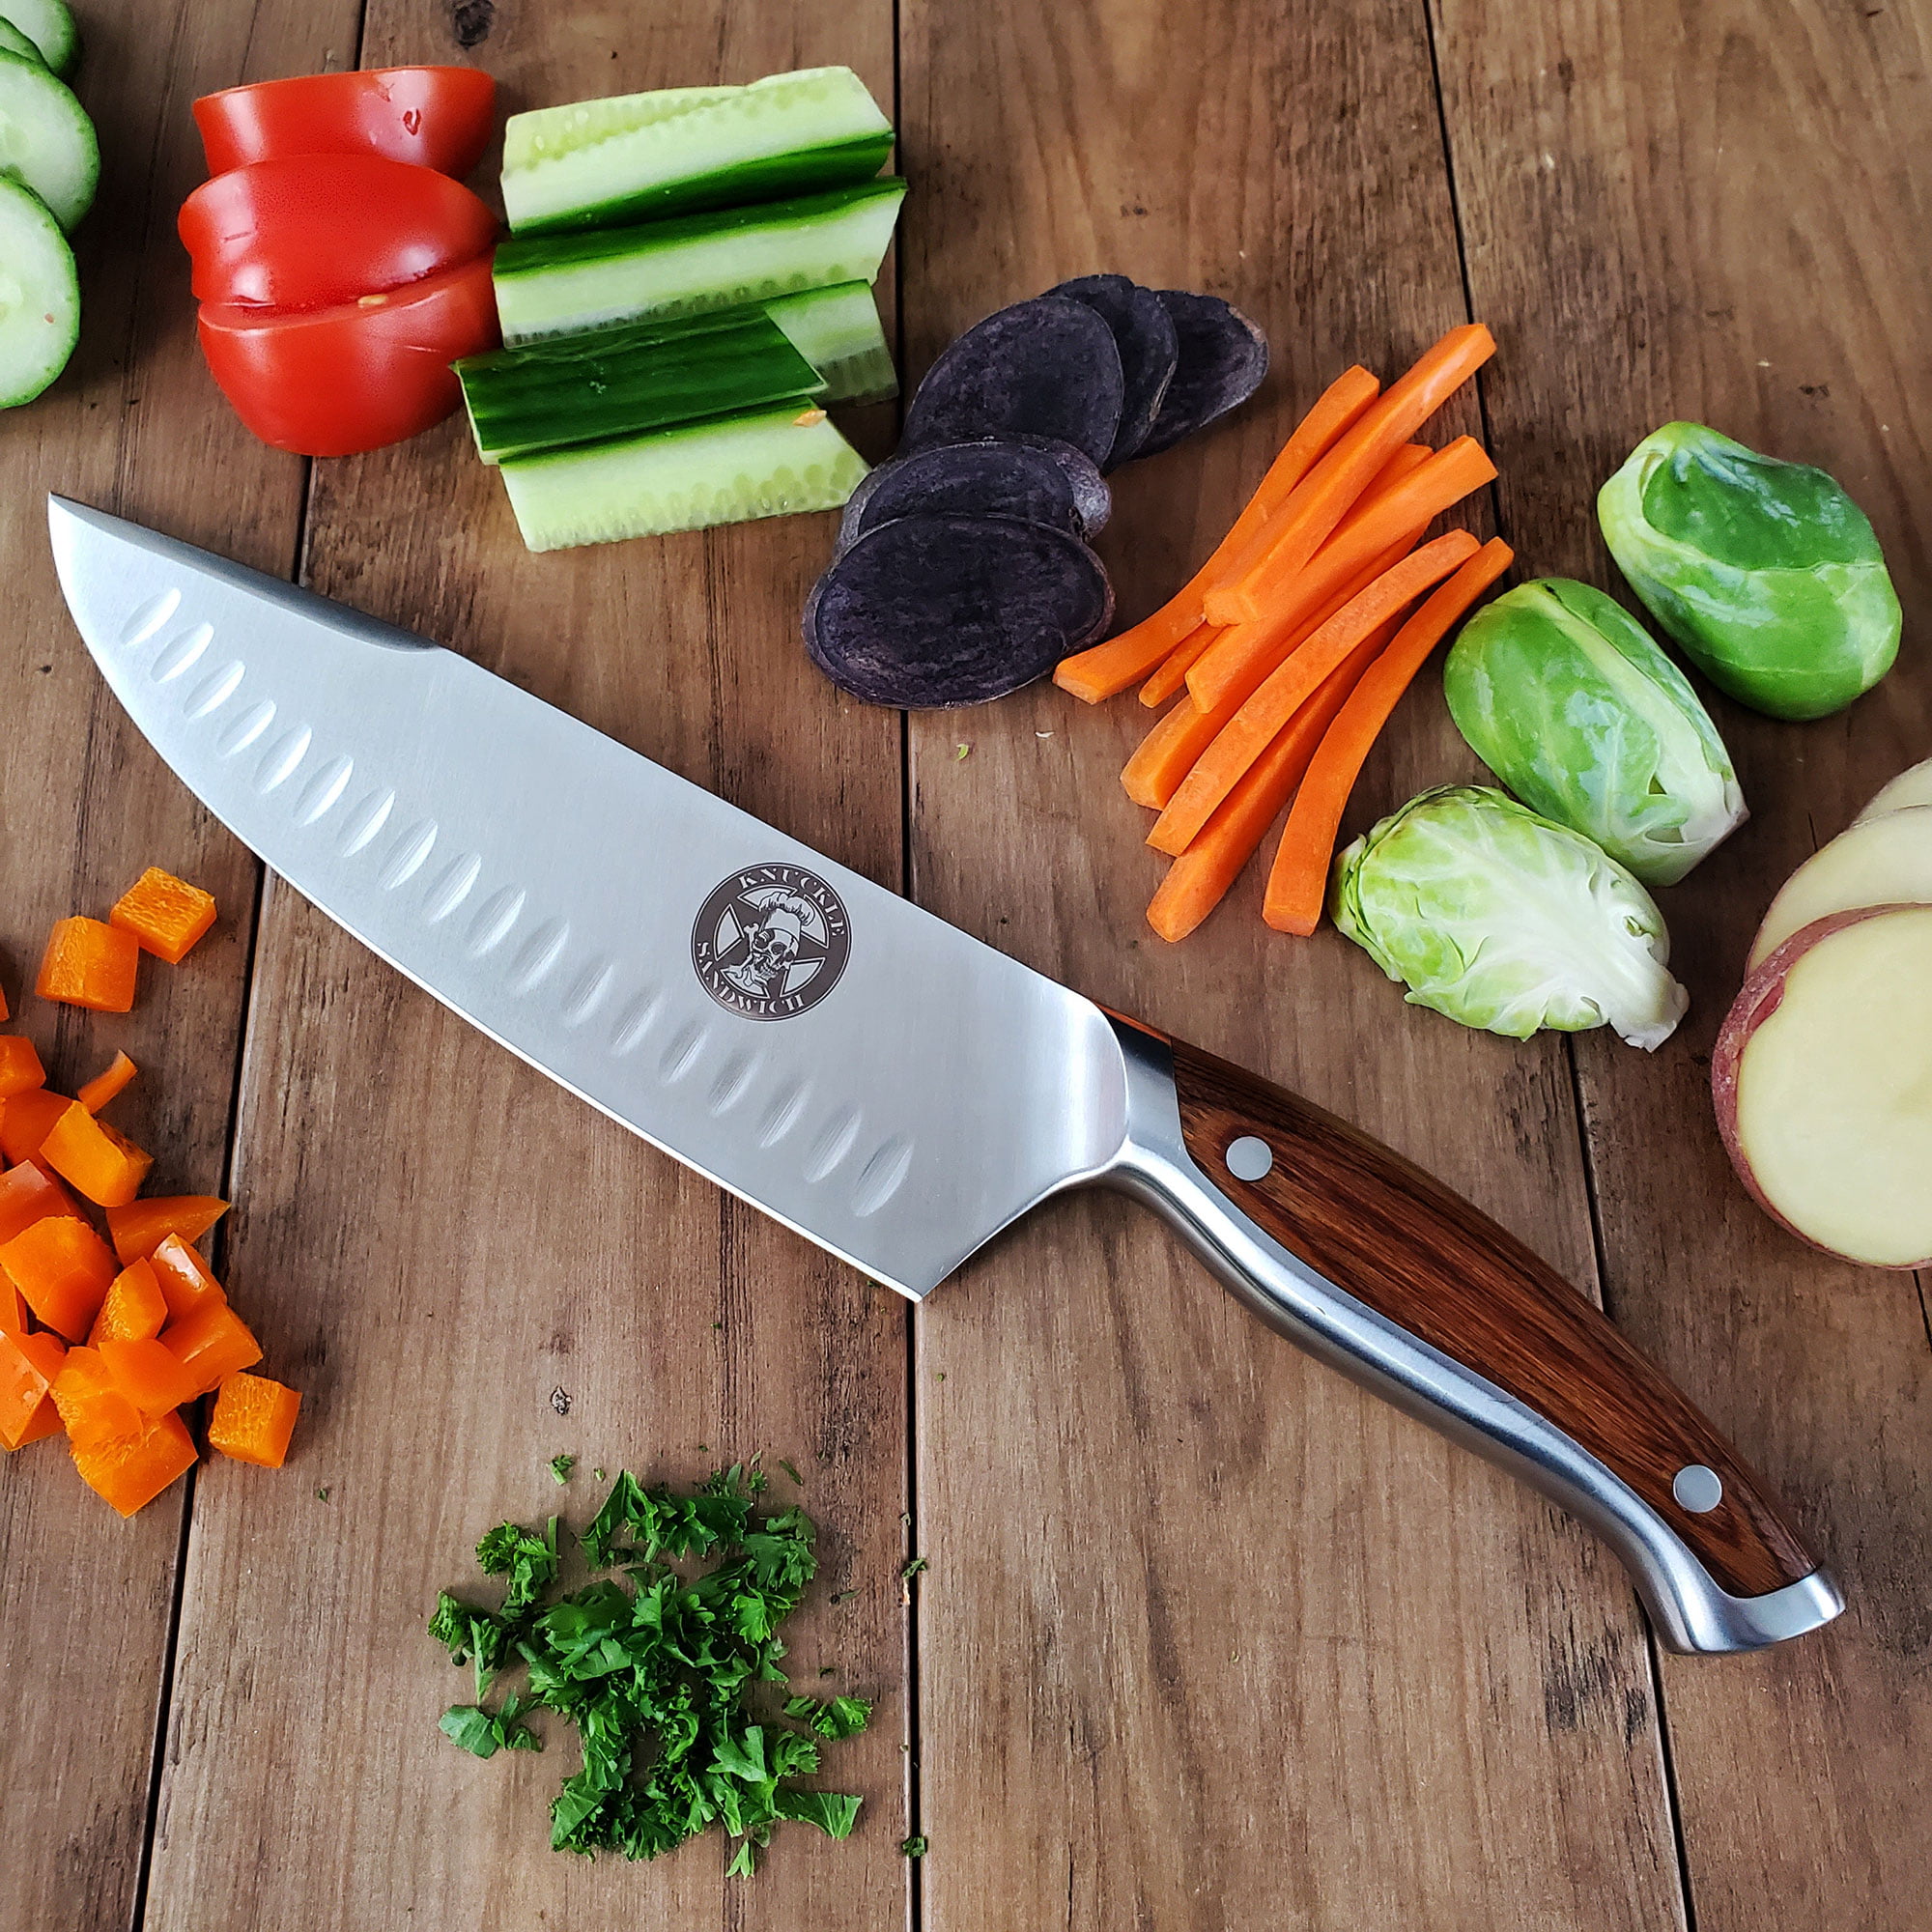 Ergo Chef Guy Fieri Kulinary Series 8 Chef's Knife, Granton Edge